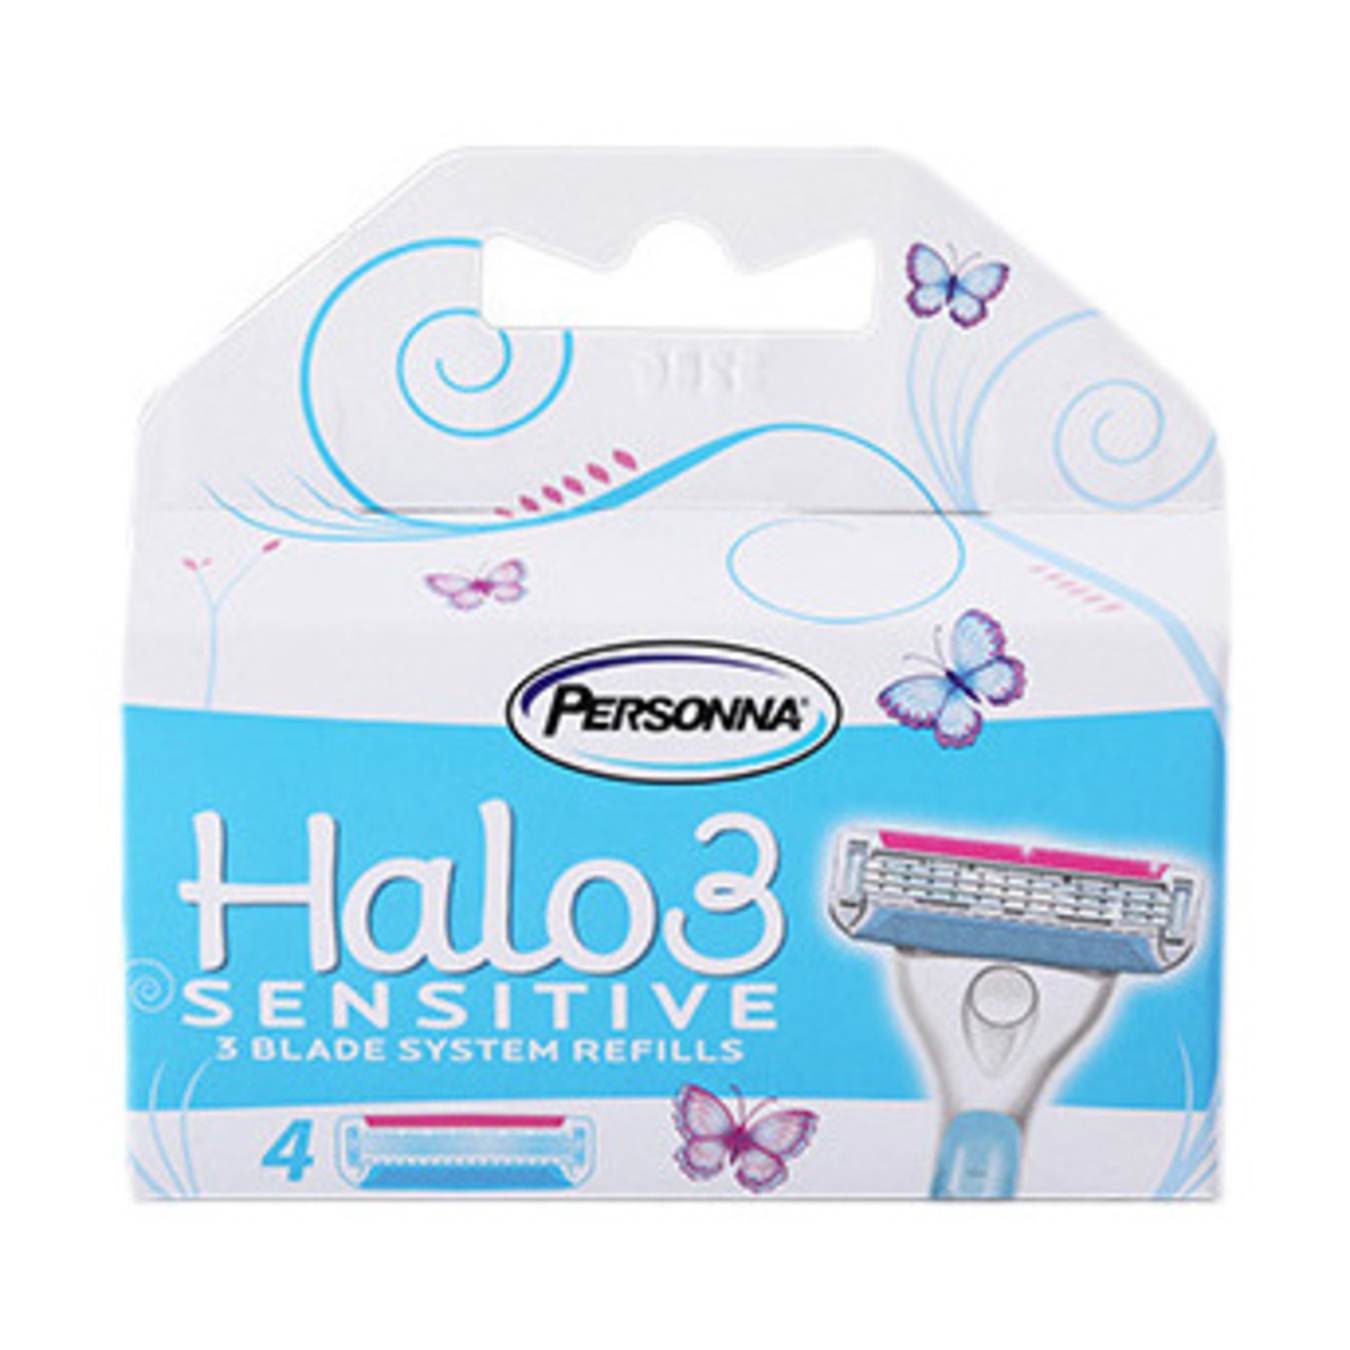 Картриджі Personna Halo 3 Sensitive до станка для гоління жіночі змінні 4шт